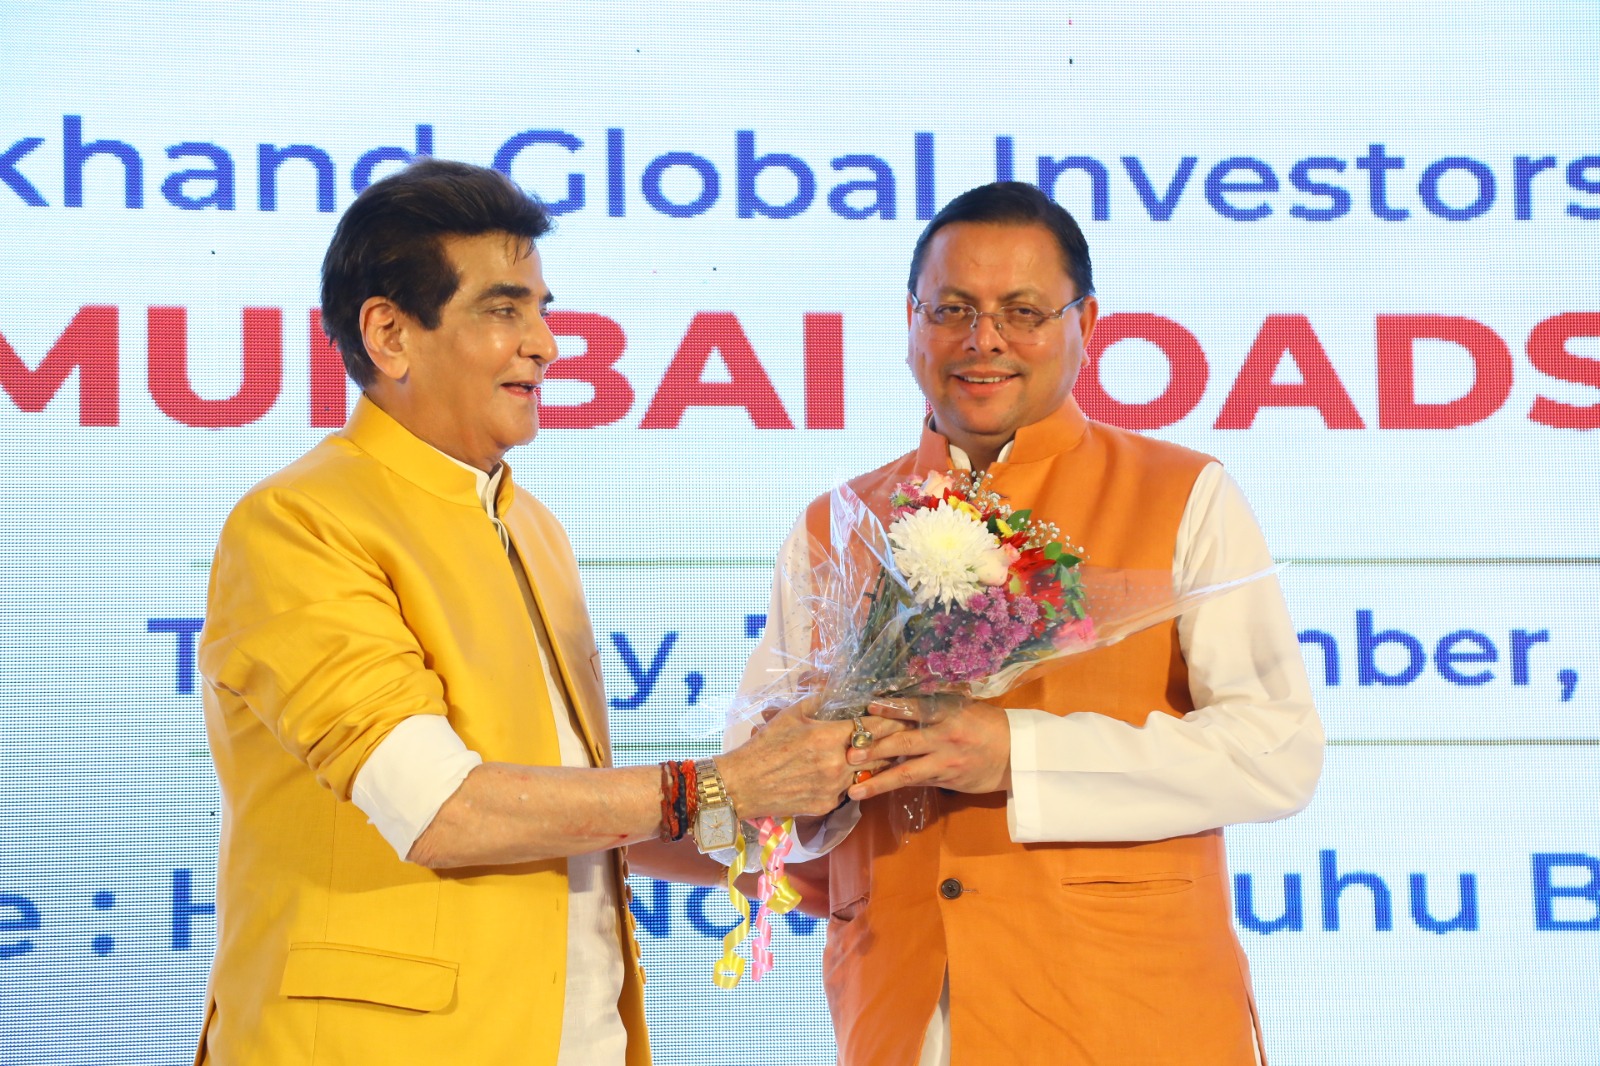 मुख्यमंत्री ने फिल्म जगत से जुड़े लोगों को किया ग्लोबल इन्वेस्टर समिट में आमंत्रित